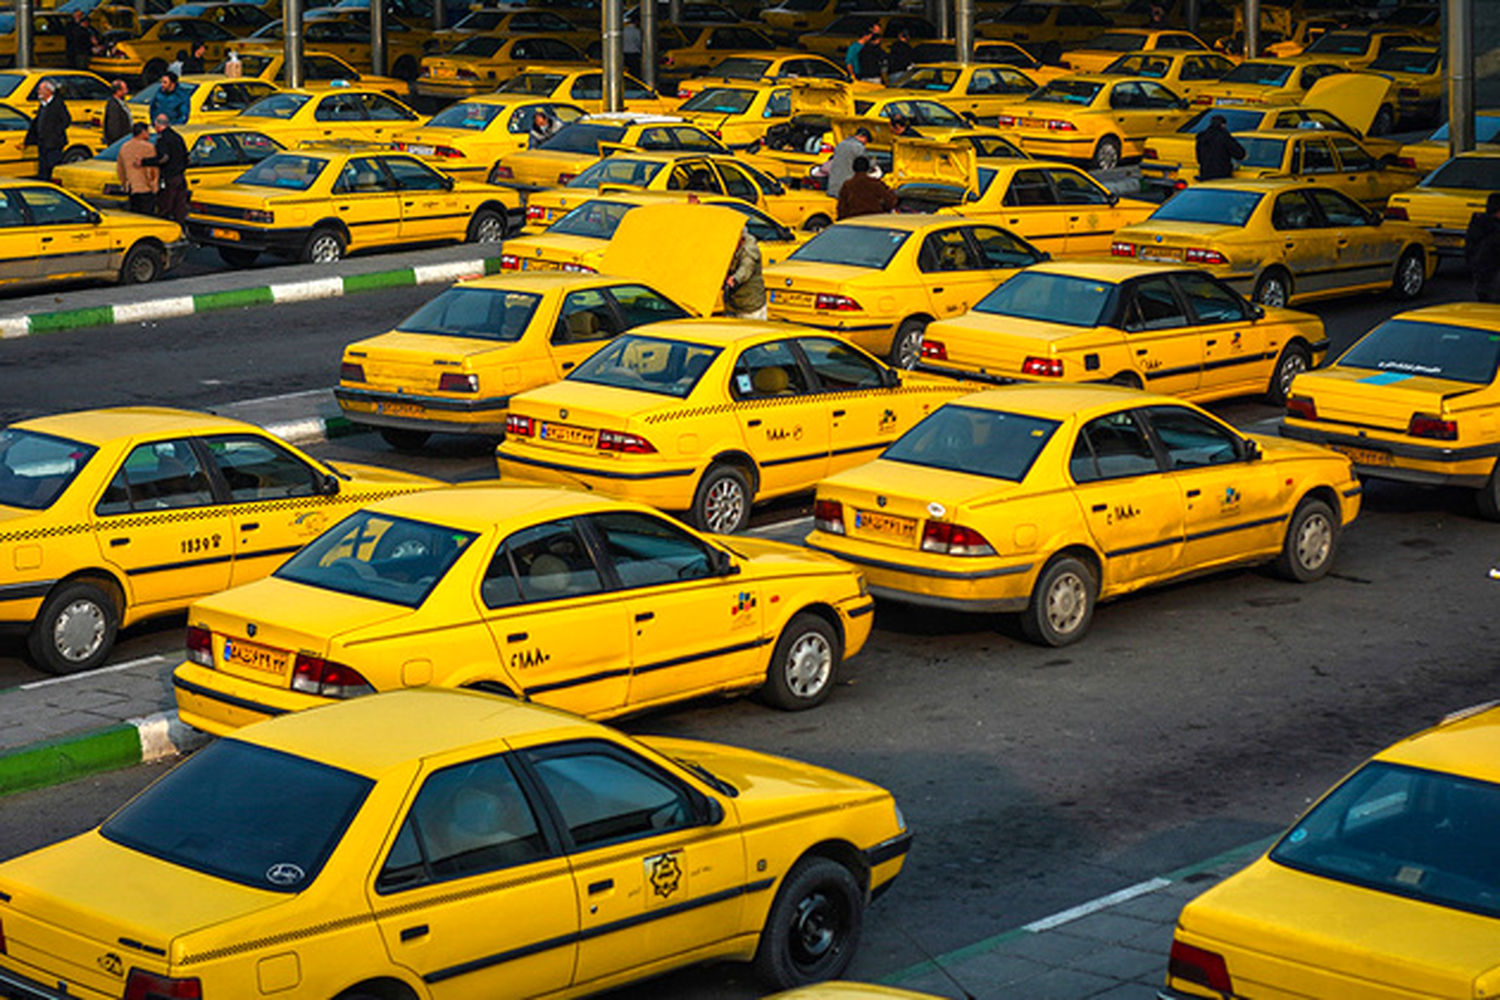 مسافرگیری 3 نفره تاکسی ها مشرط به داشتن کاور نایلونی